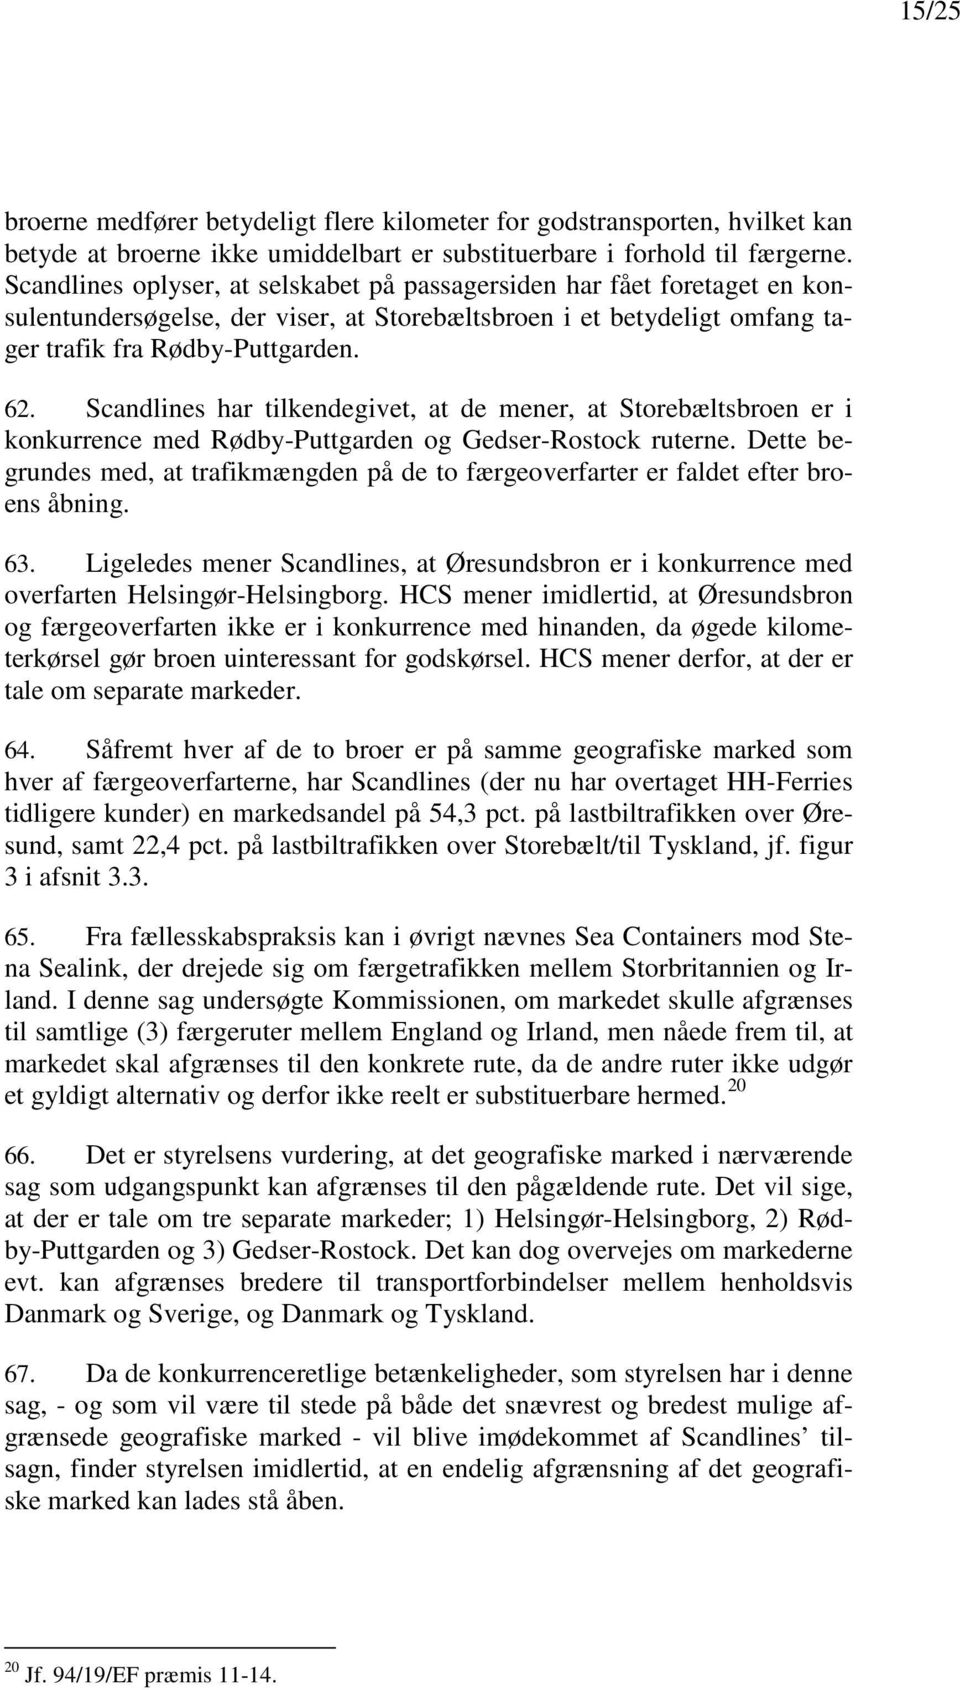 Scandlines har tilkendegivet, at de mener, at Storebæltsbroen er i konkurrence med Rødby-Puttgarden og Gedser-Rostock ruterne.